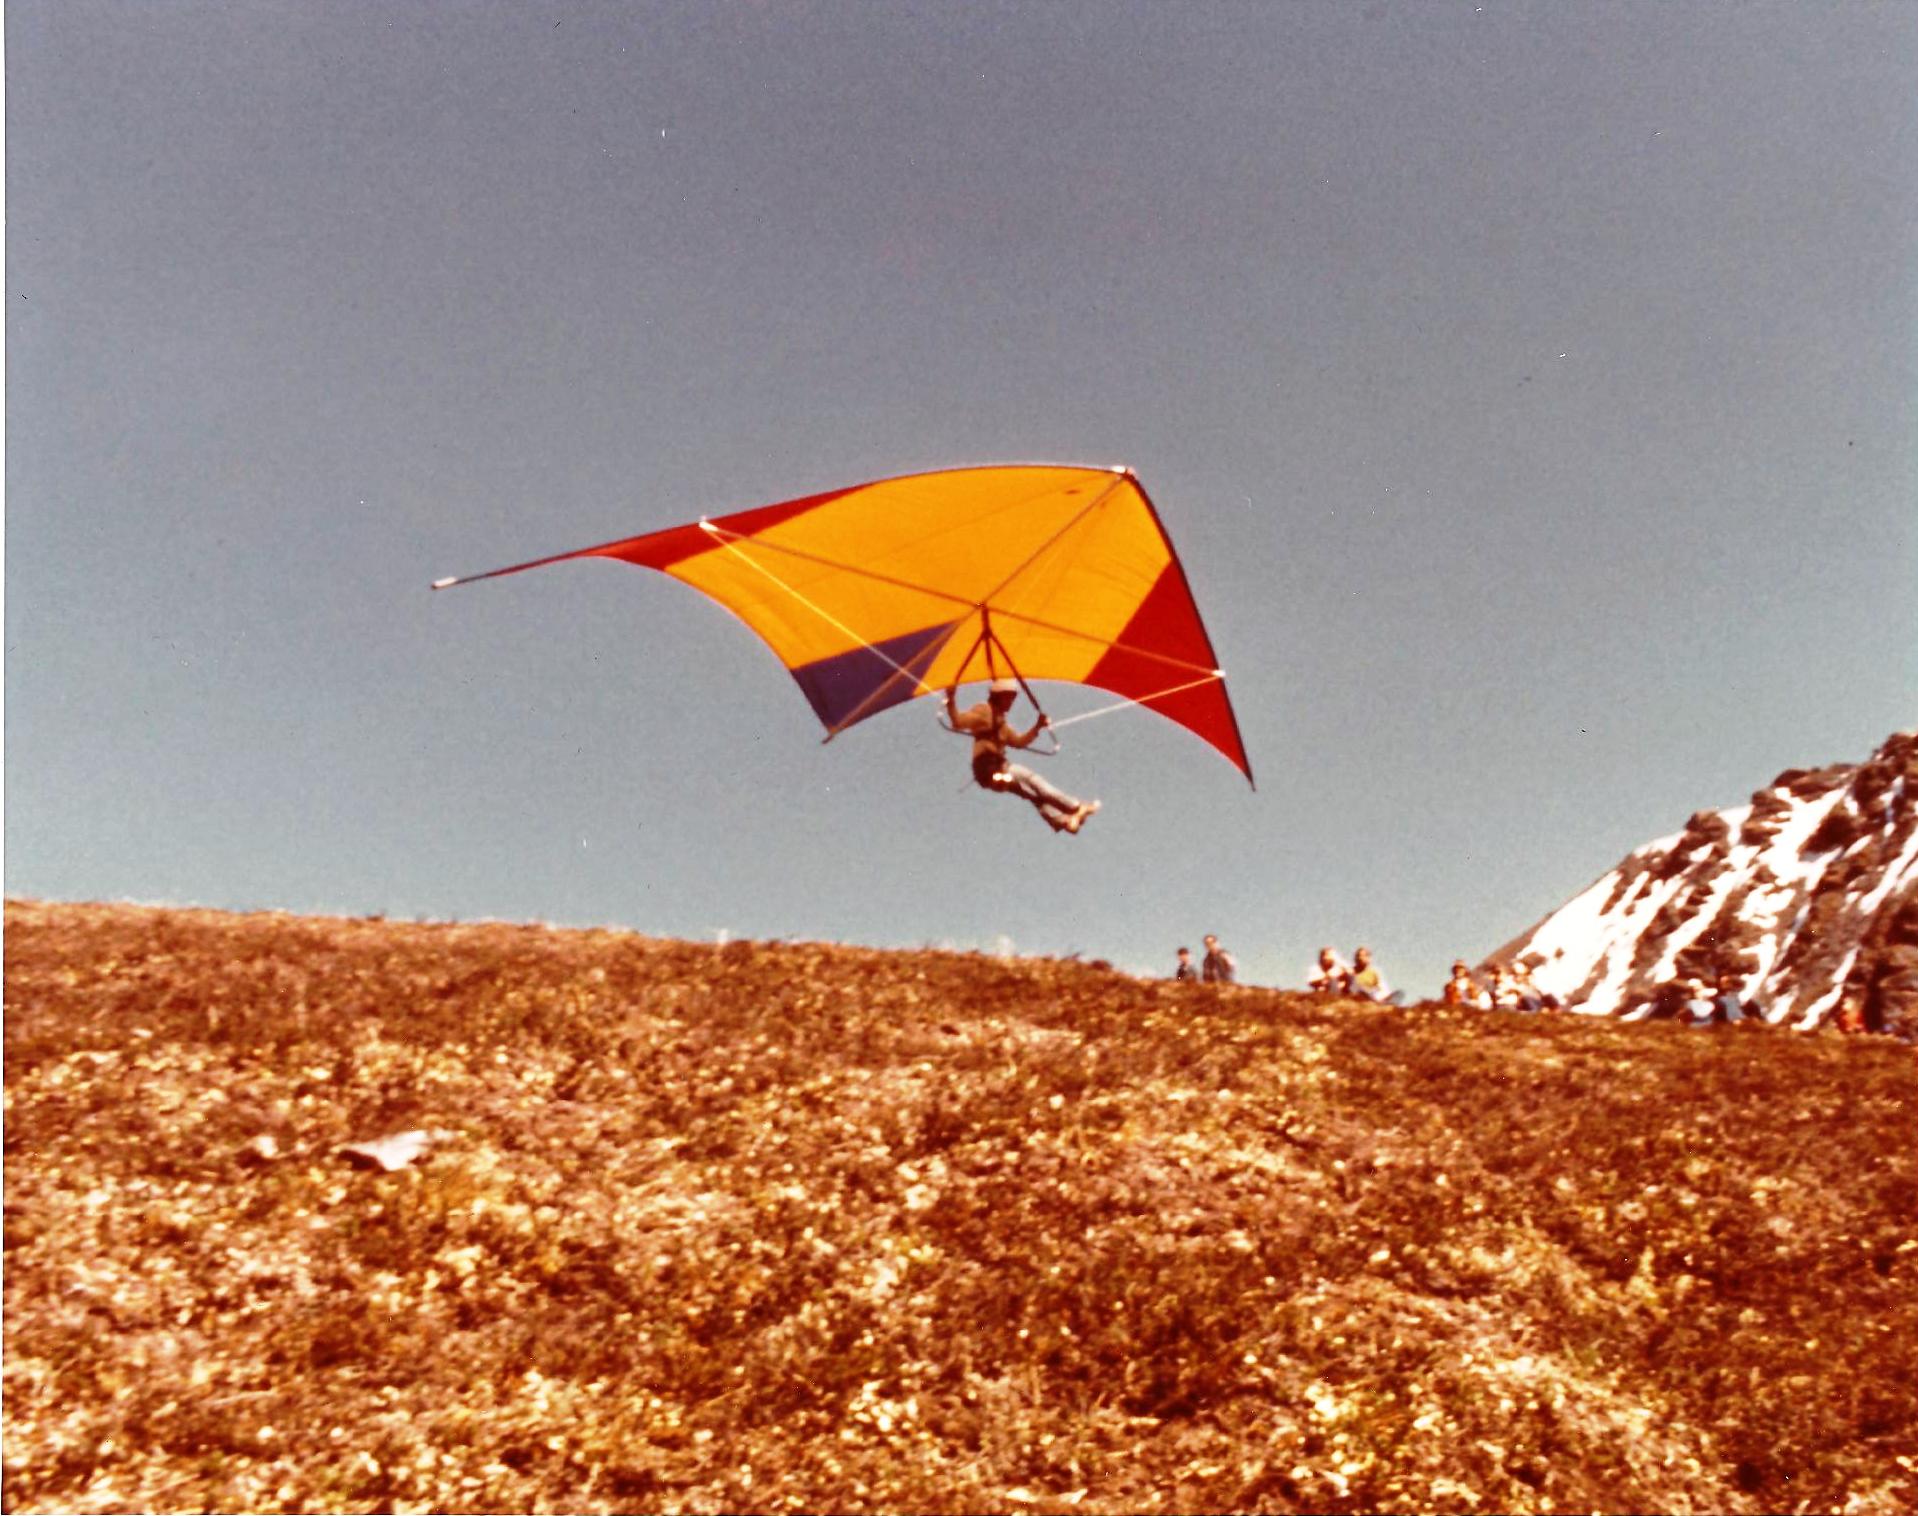 bill-sheka-seagull-3-takeoff-from-hatchers-pass-alaska-july-4-1975